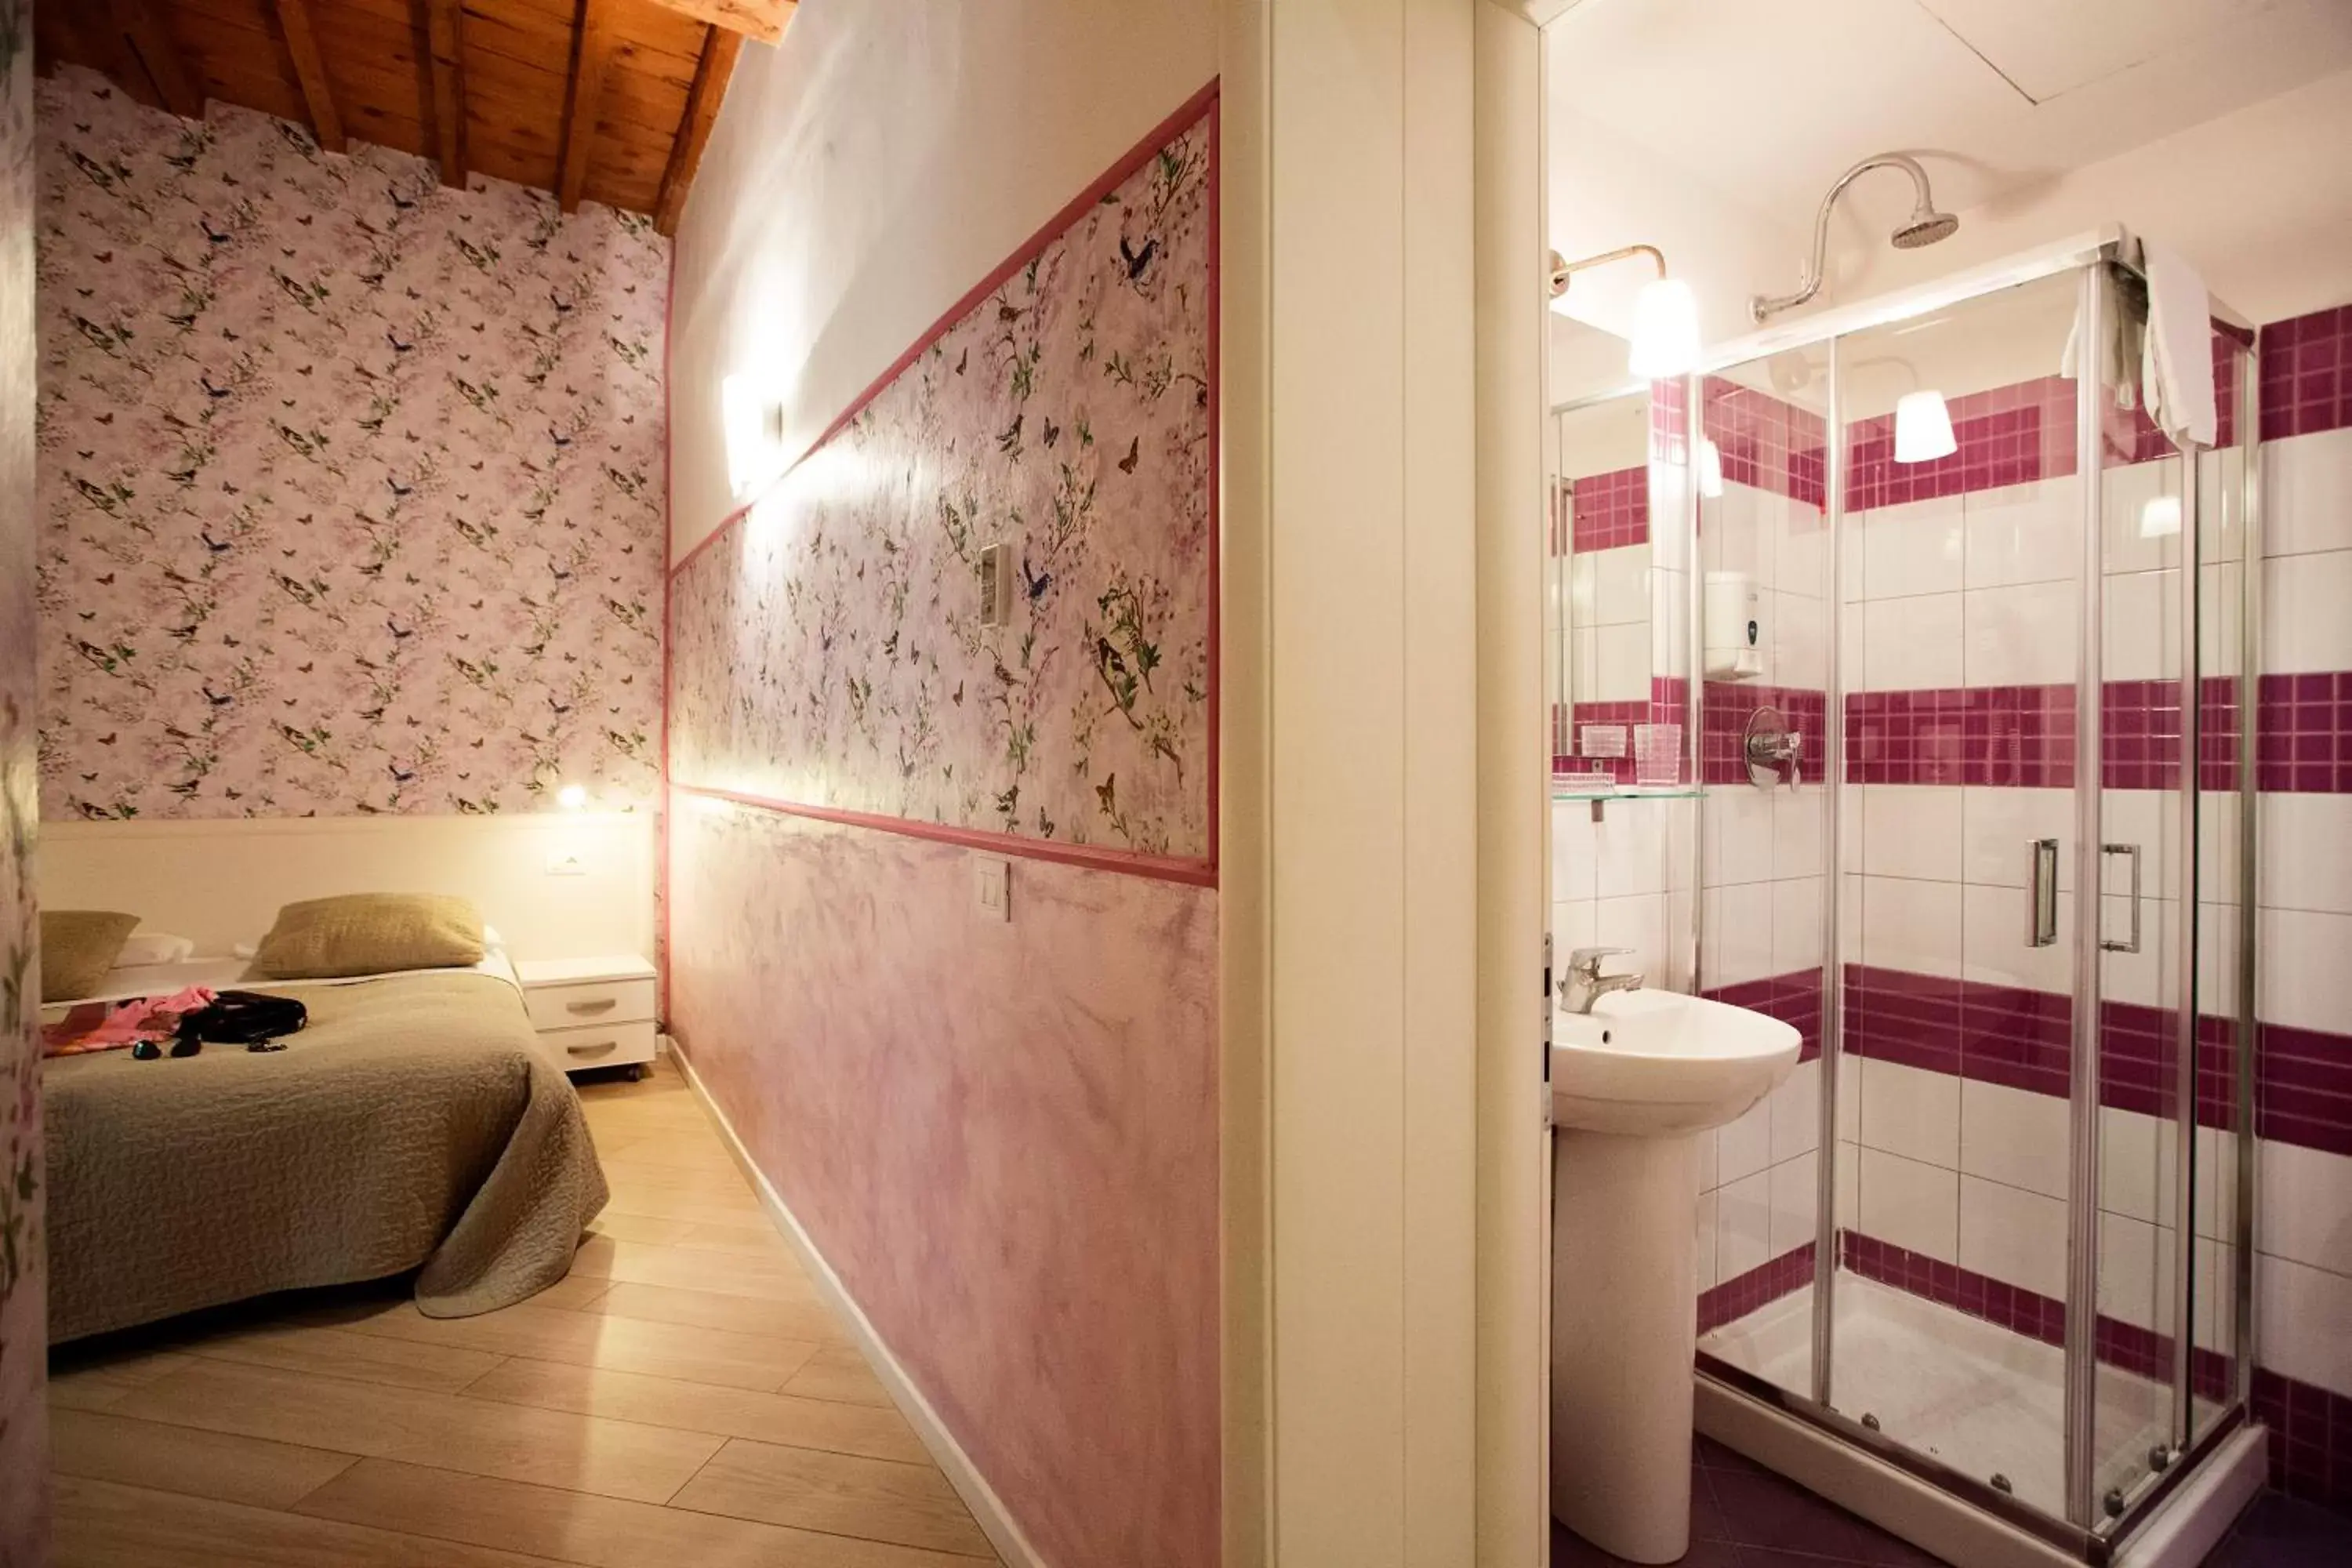 Photo of the whole room, Bathroom in Hotel Bencidormi